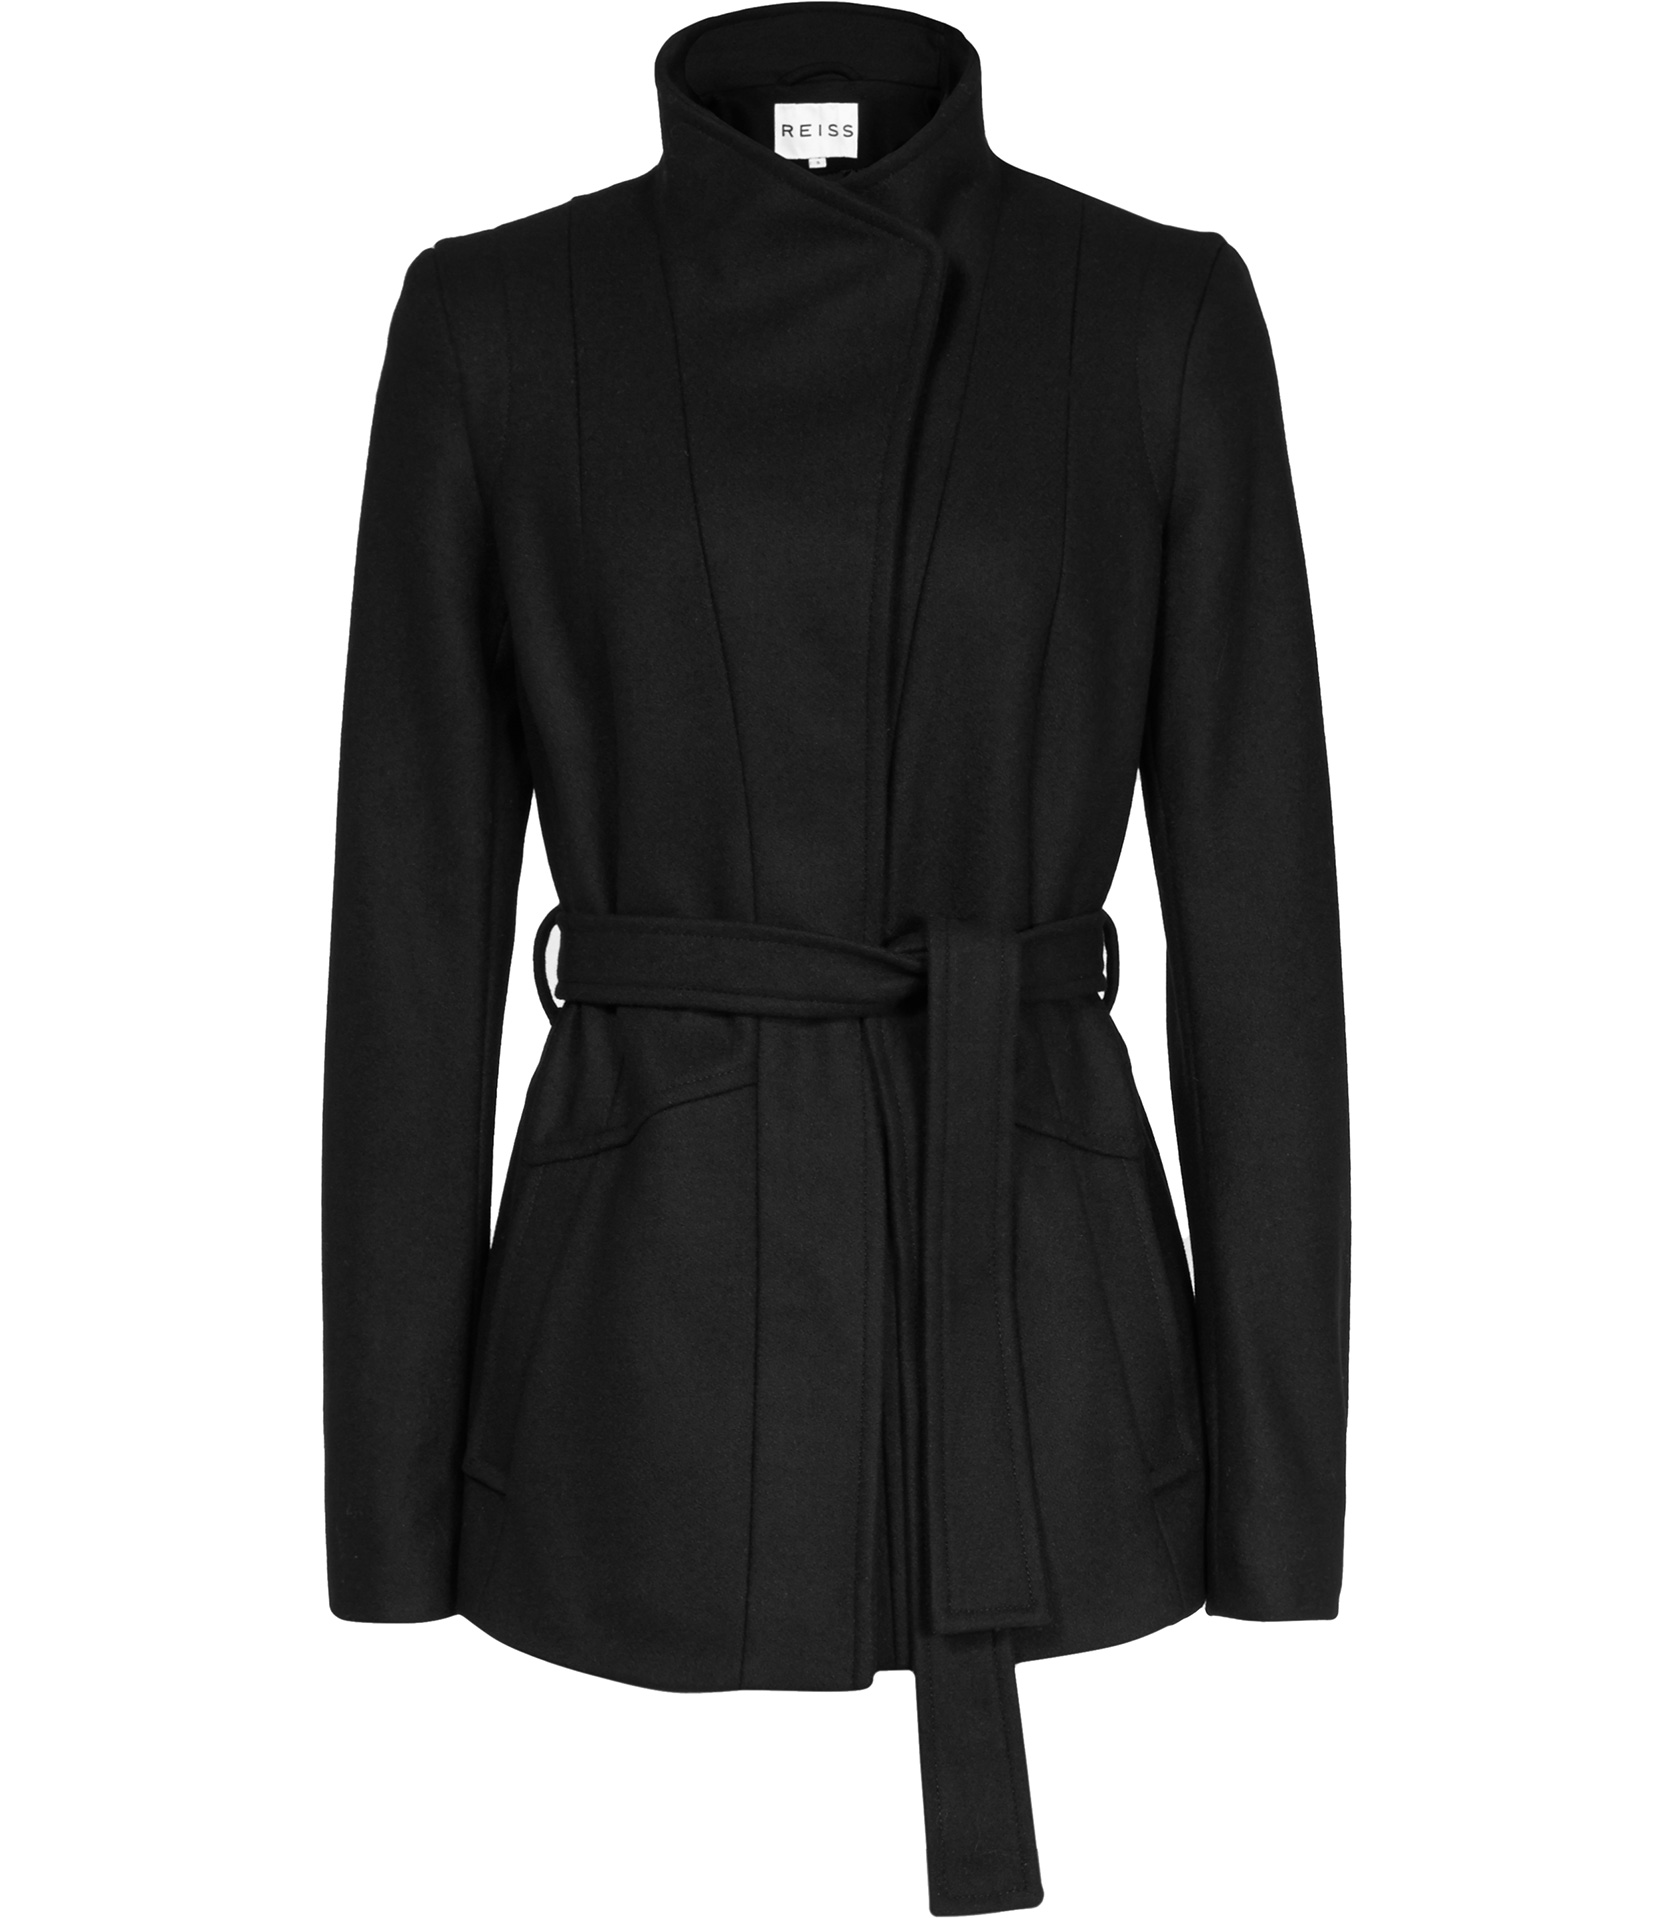 Reiss Chianti Pleat Back Belted Jacket in Black | Lyst